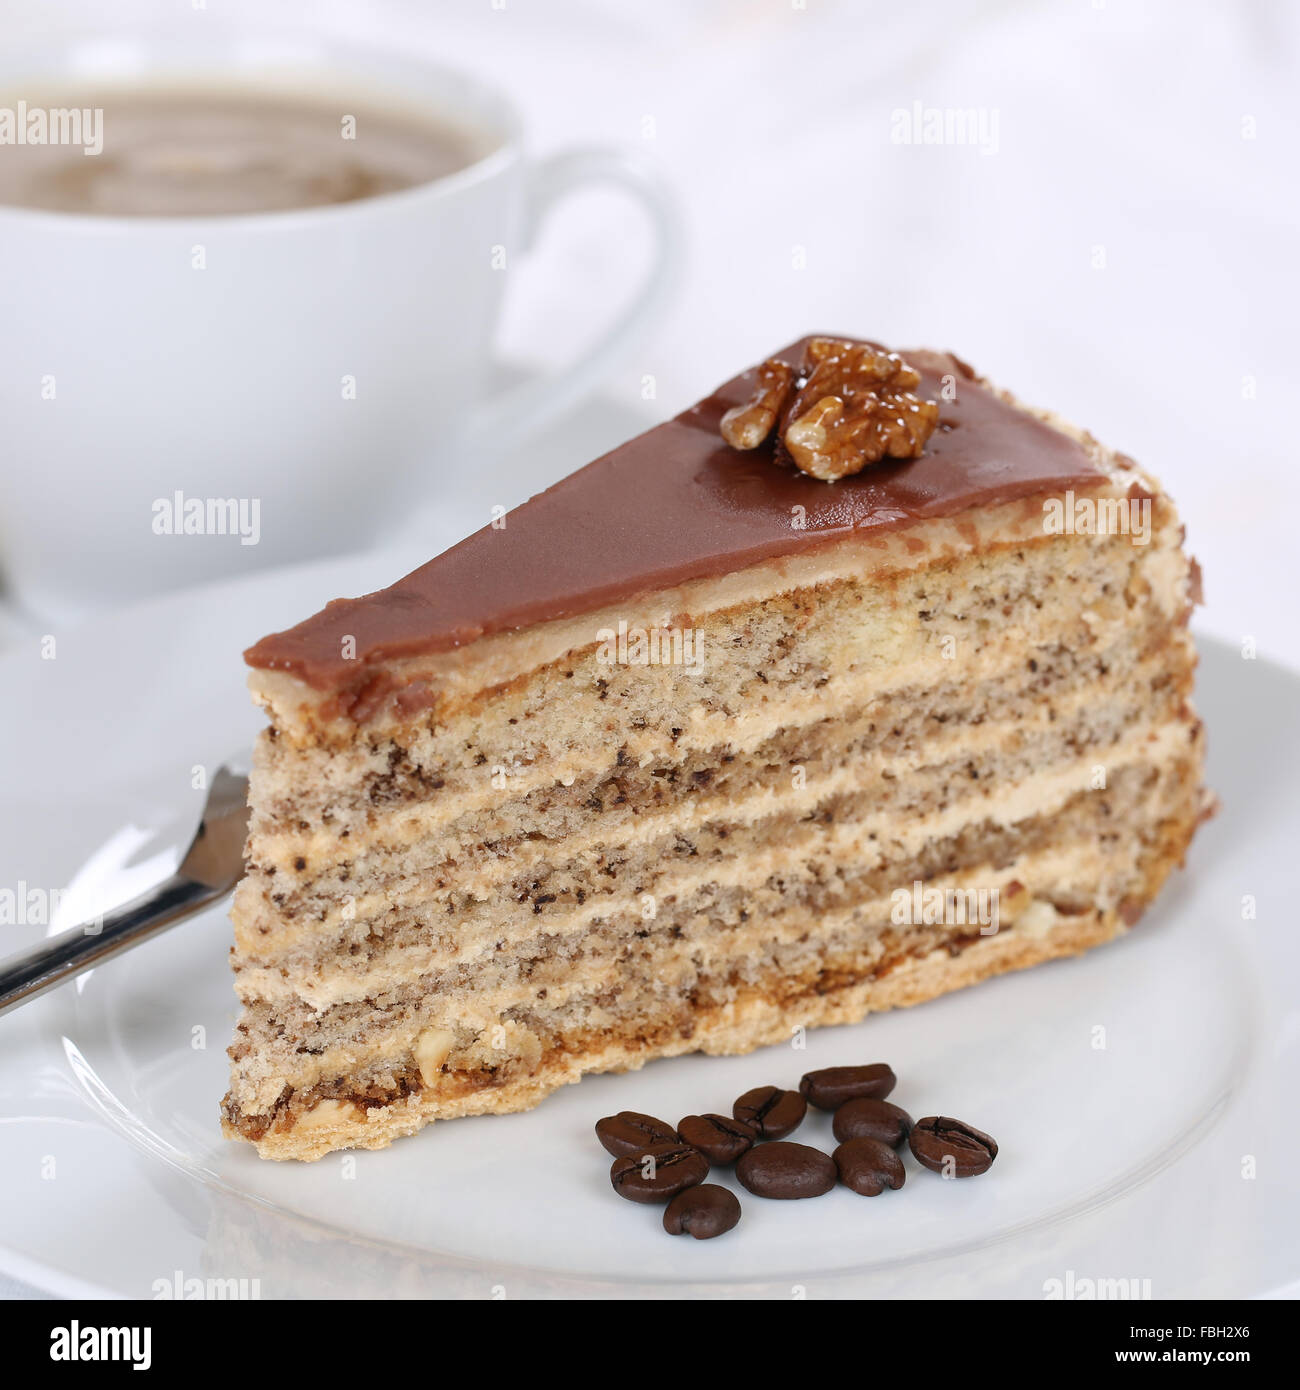 Cake and fresh coffee tart dessert sweet pastry Stock Photo